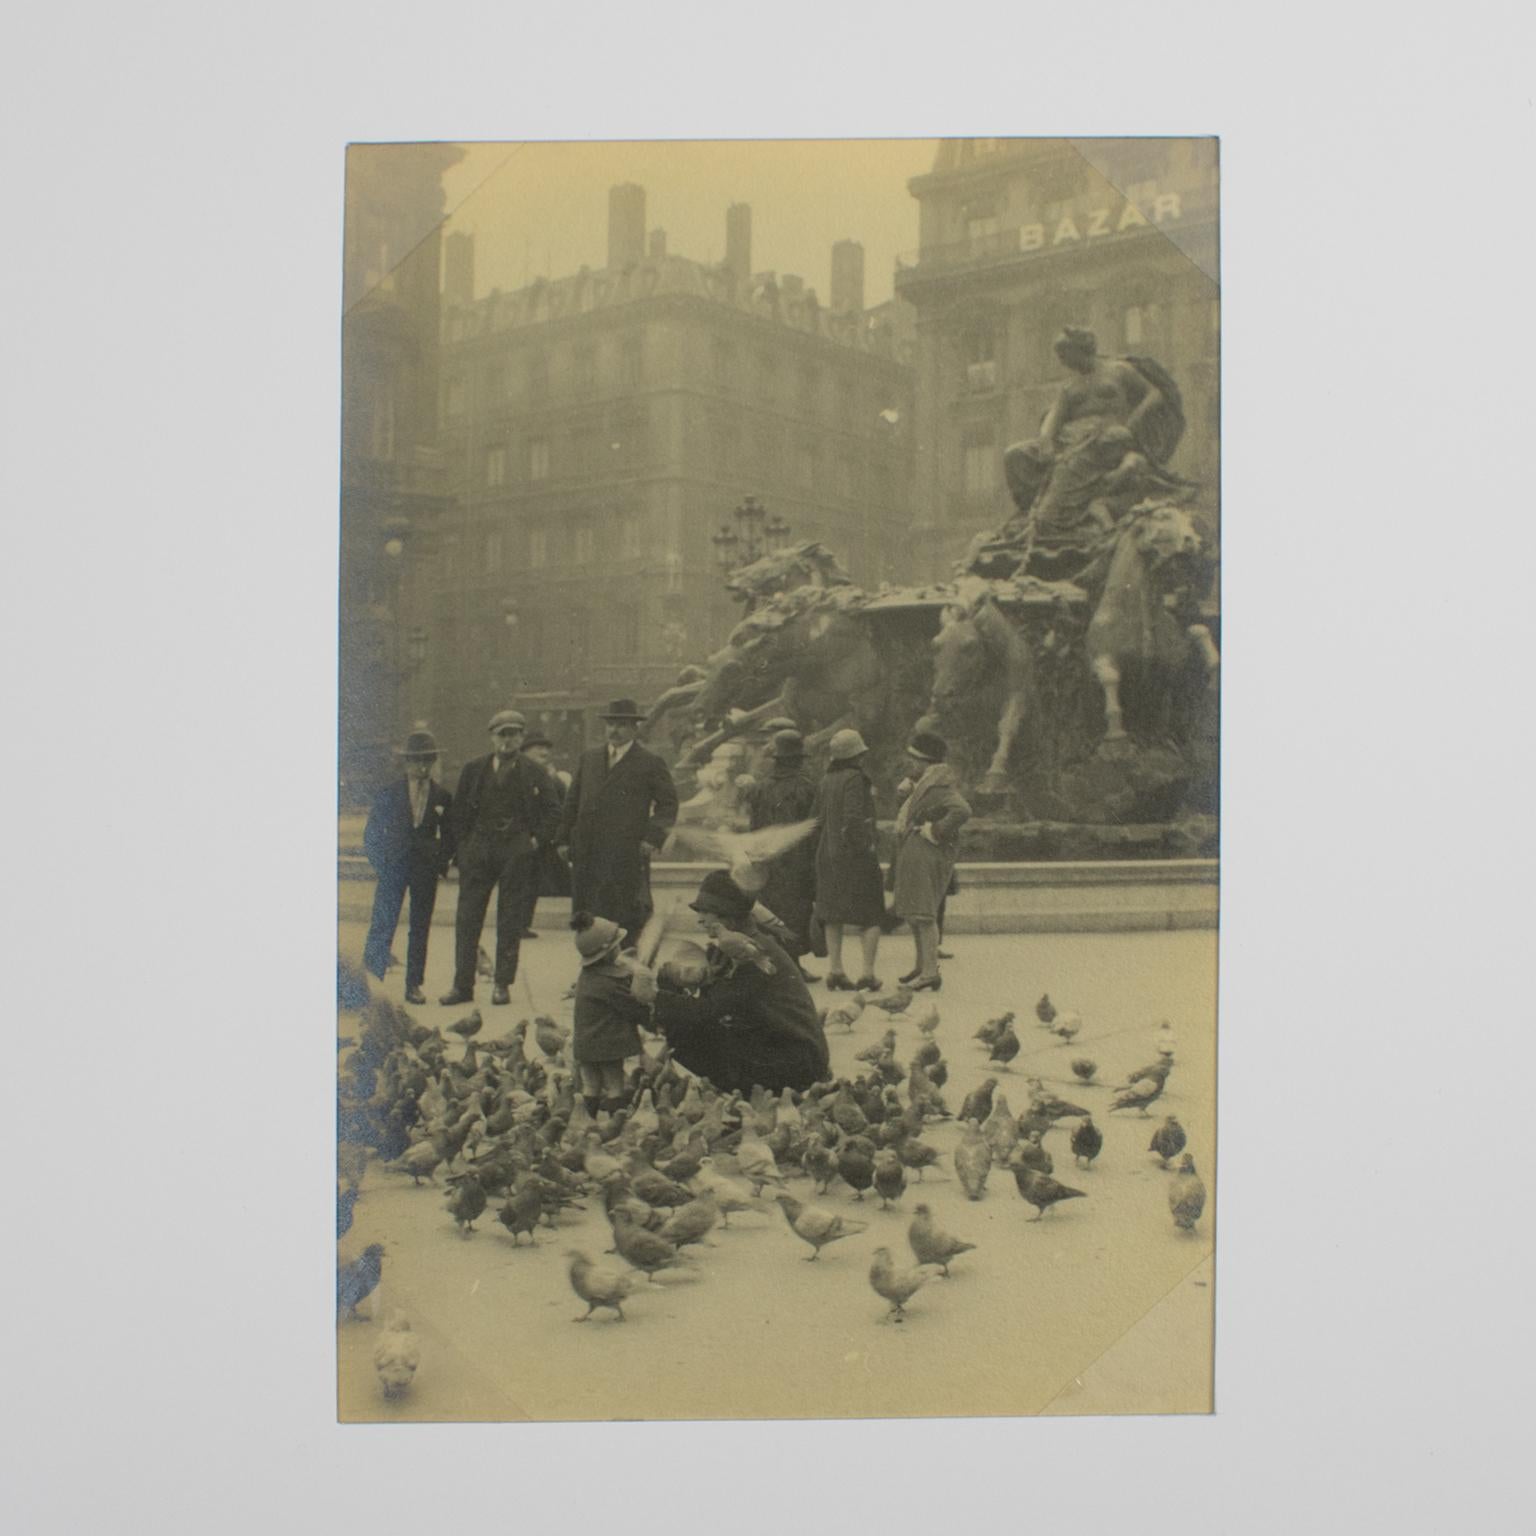 Pigmente beim Futter in Lyon, Frankreich 1927, Silber-Gelatine-Schwarz-Weiß-Fotografie – Photograph von Unknown